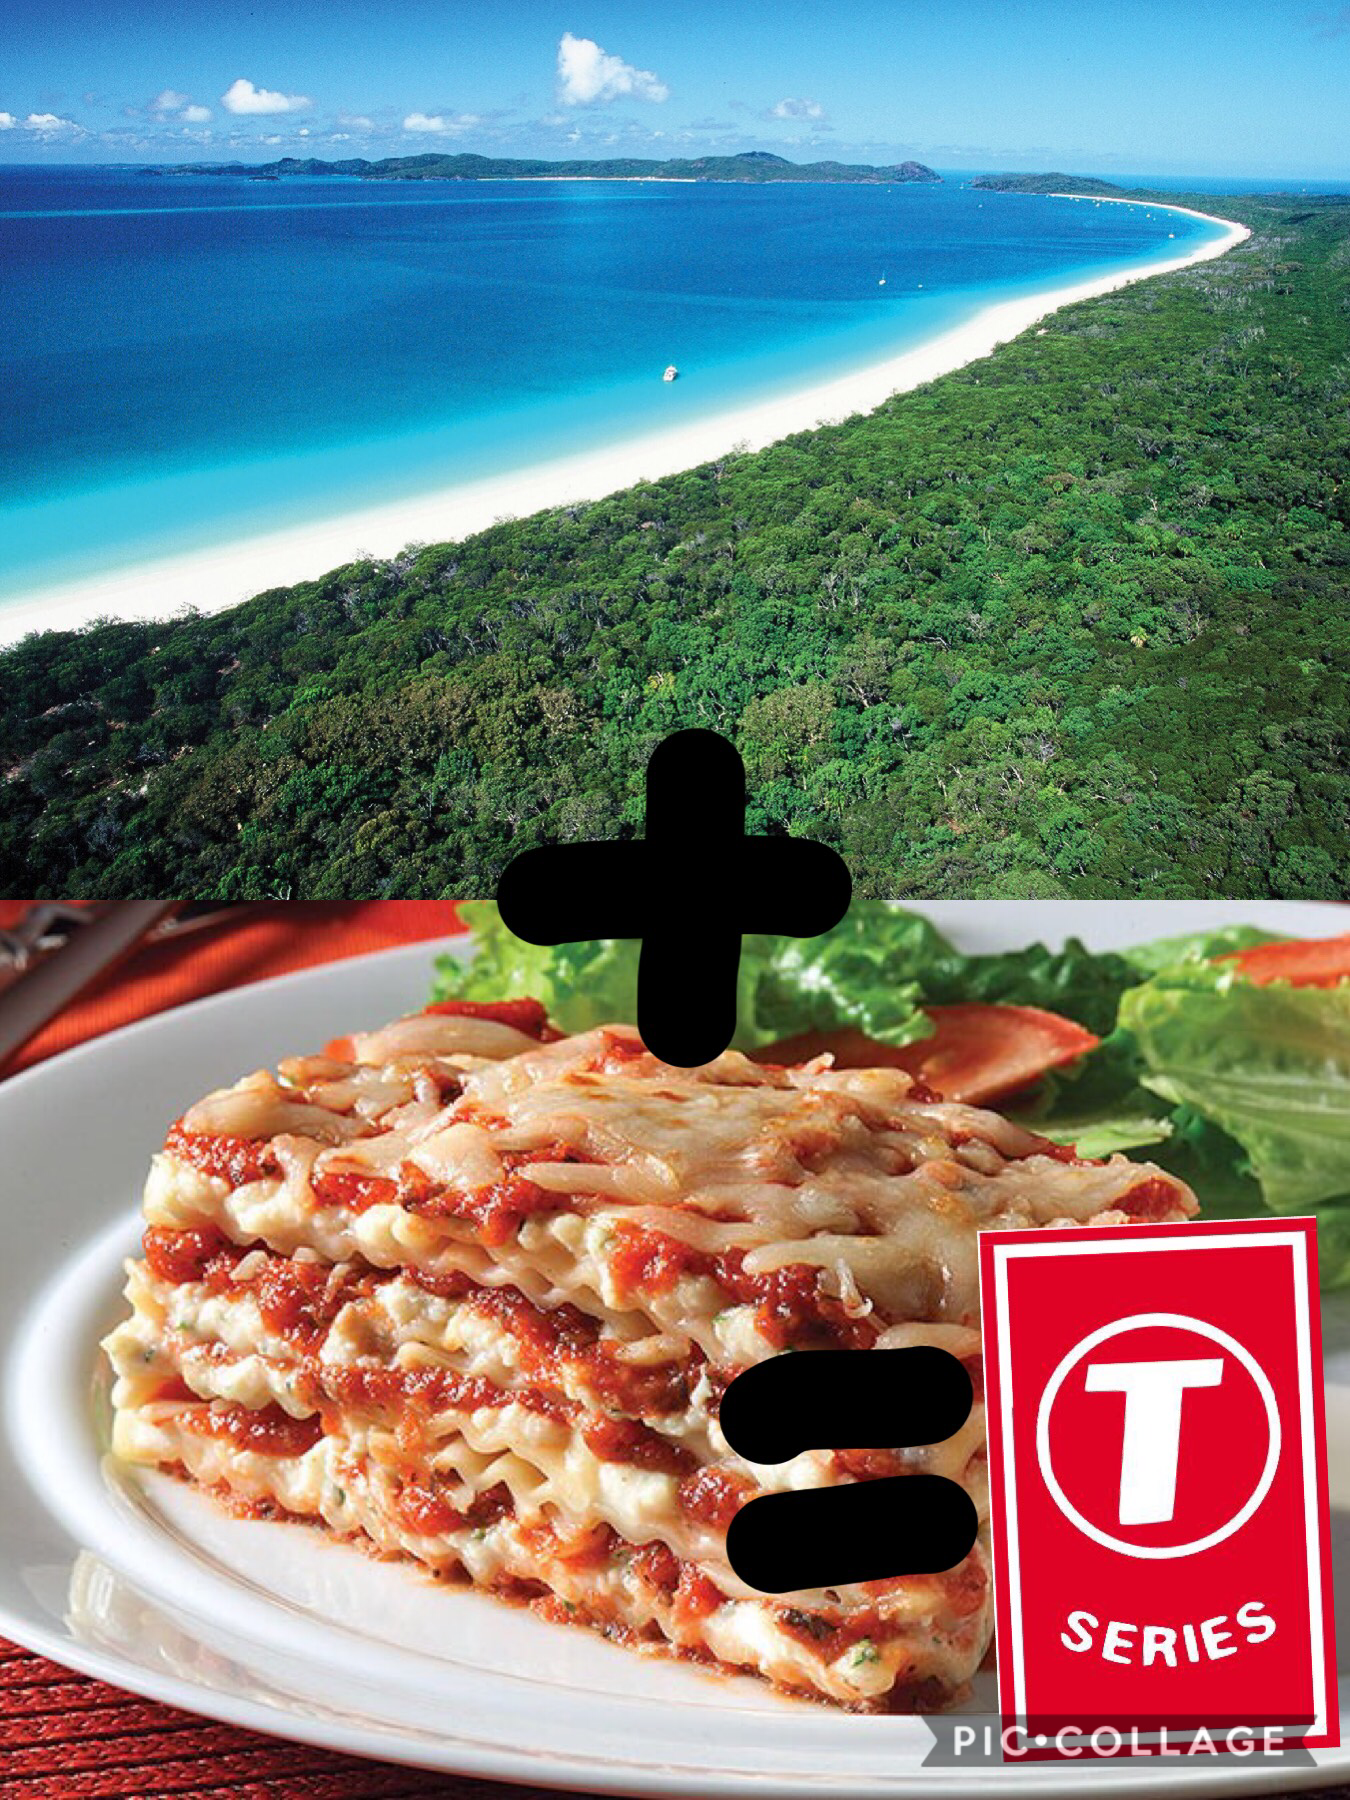 Beach+lasagna=tseries